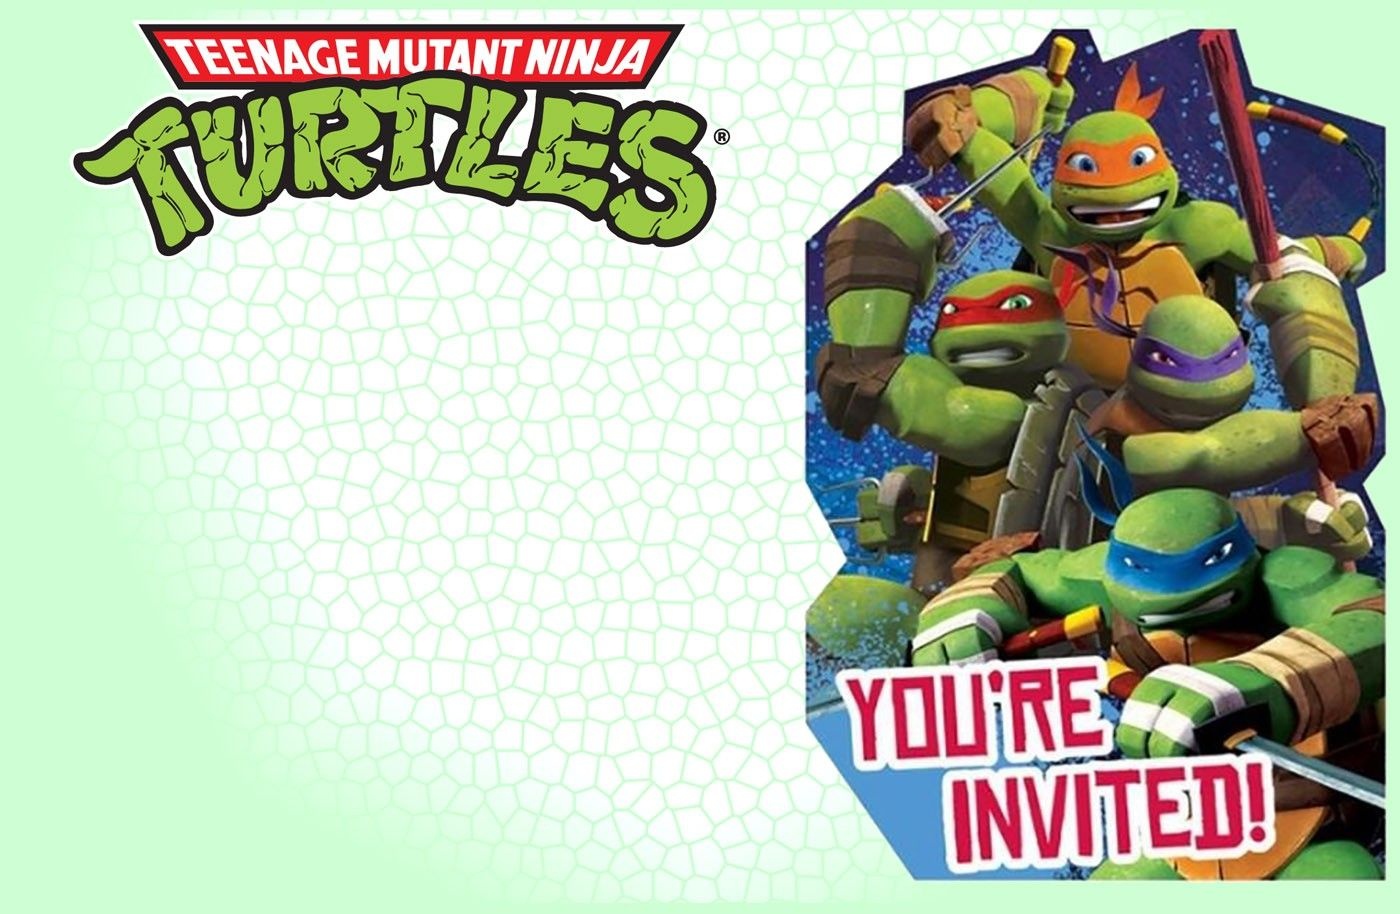 Editable Ninja Turtle Invitation Template | Tkb Printables In 2019 - Free Printable Ninja Turtle Birthday Invitations